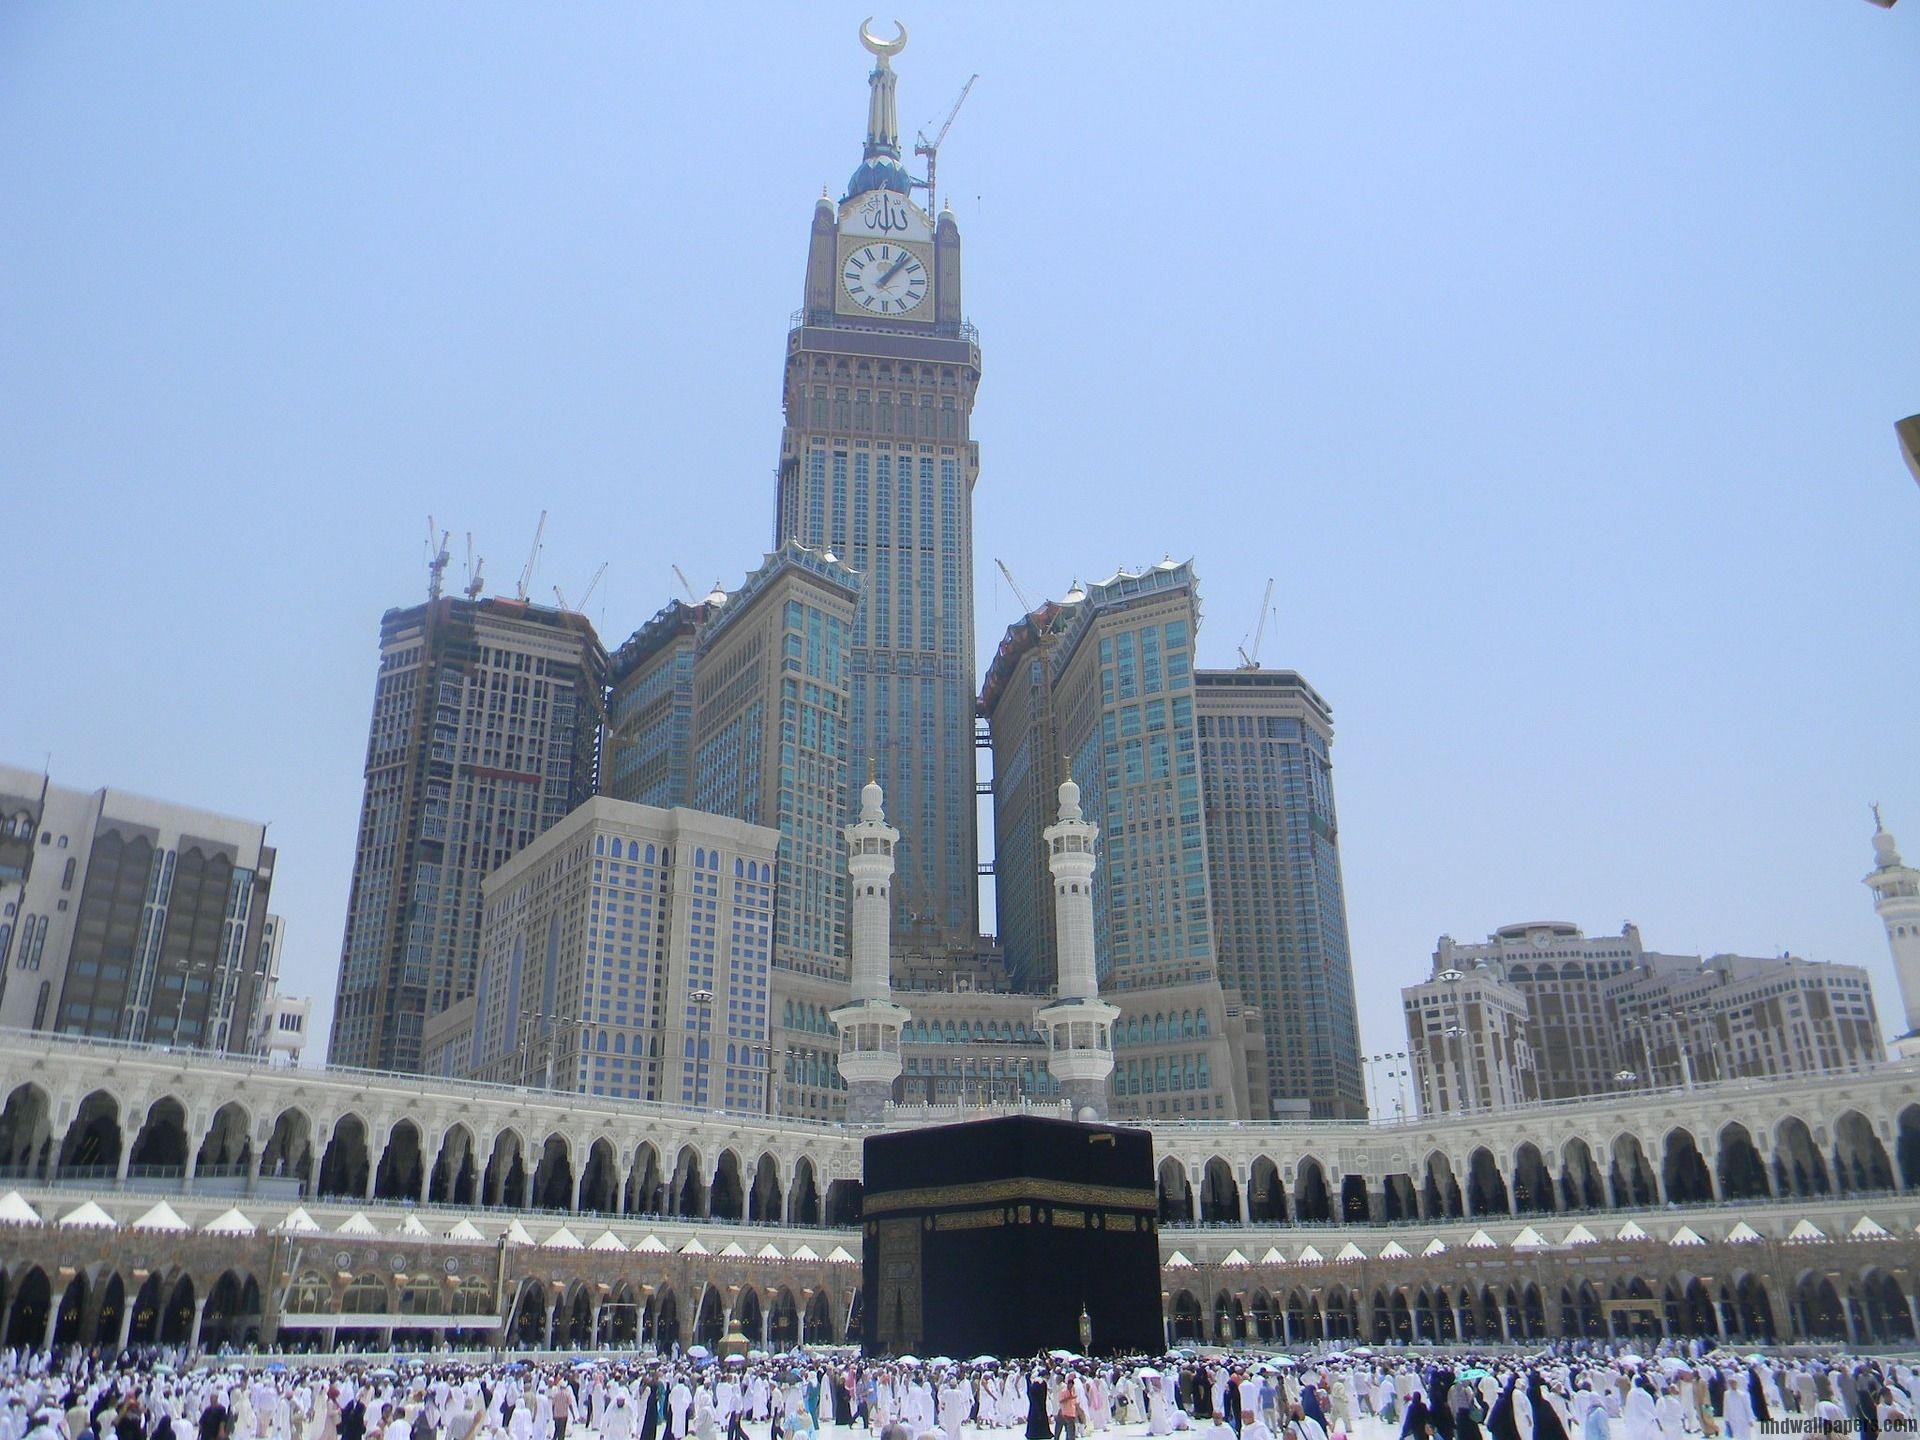 Makkah Royal Clock Tower Hotel Mecca Saudi Arabia